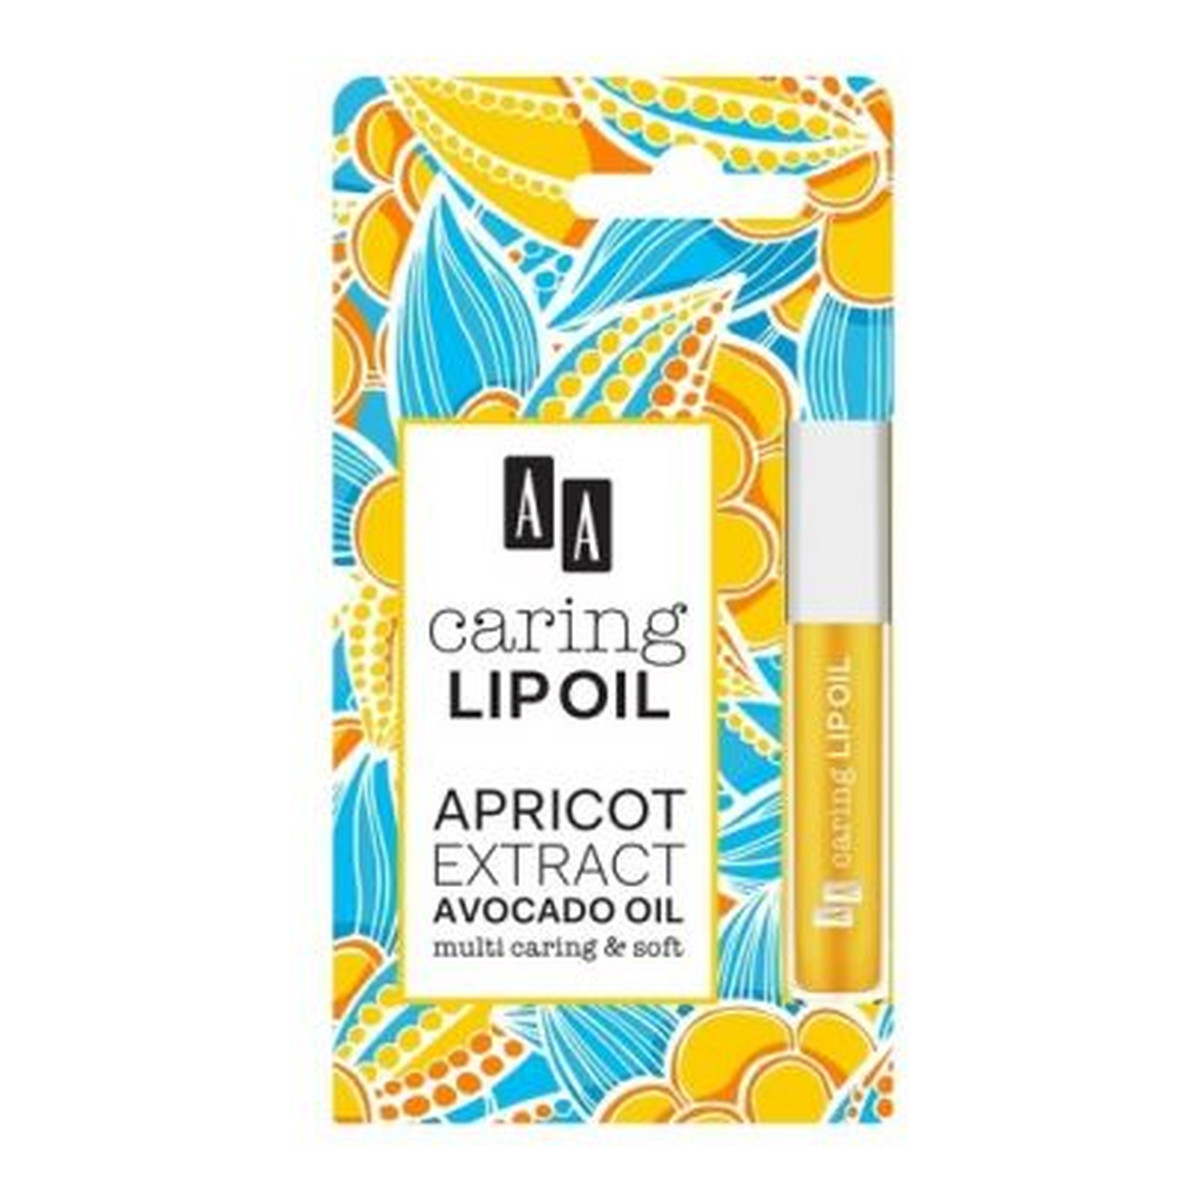 AA Caring Lip Oil Apricot Extract Avocado Oil Upiększający olejek do ust 6ml